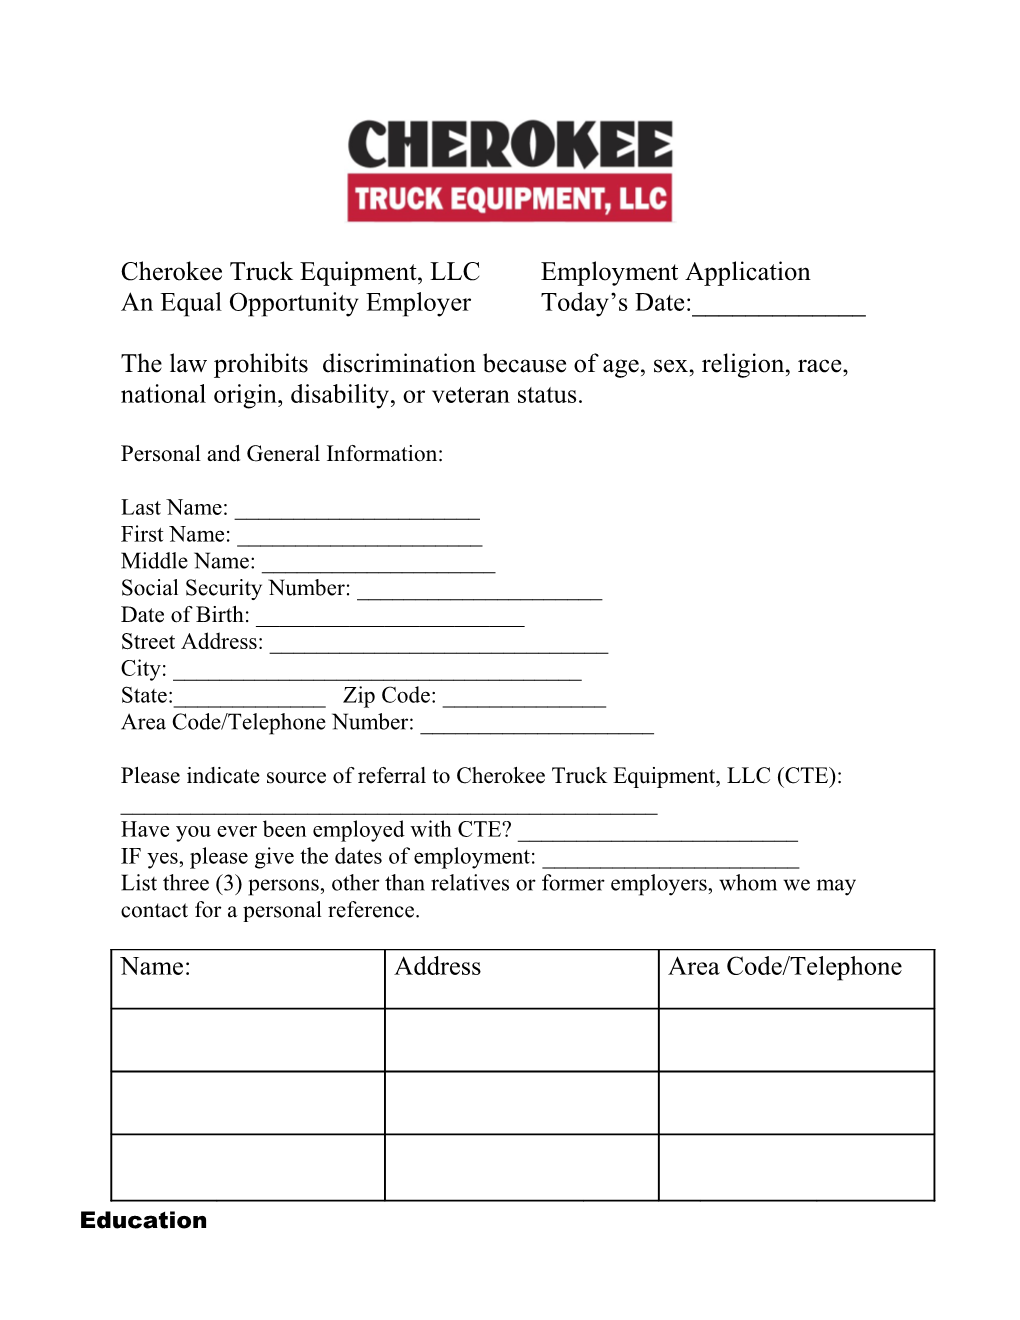 Cherokee Truck Equipment, LLC Employment Application